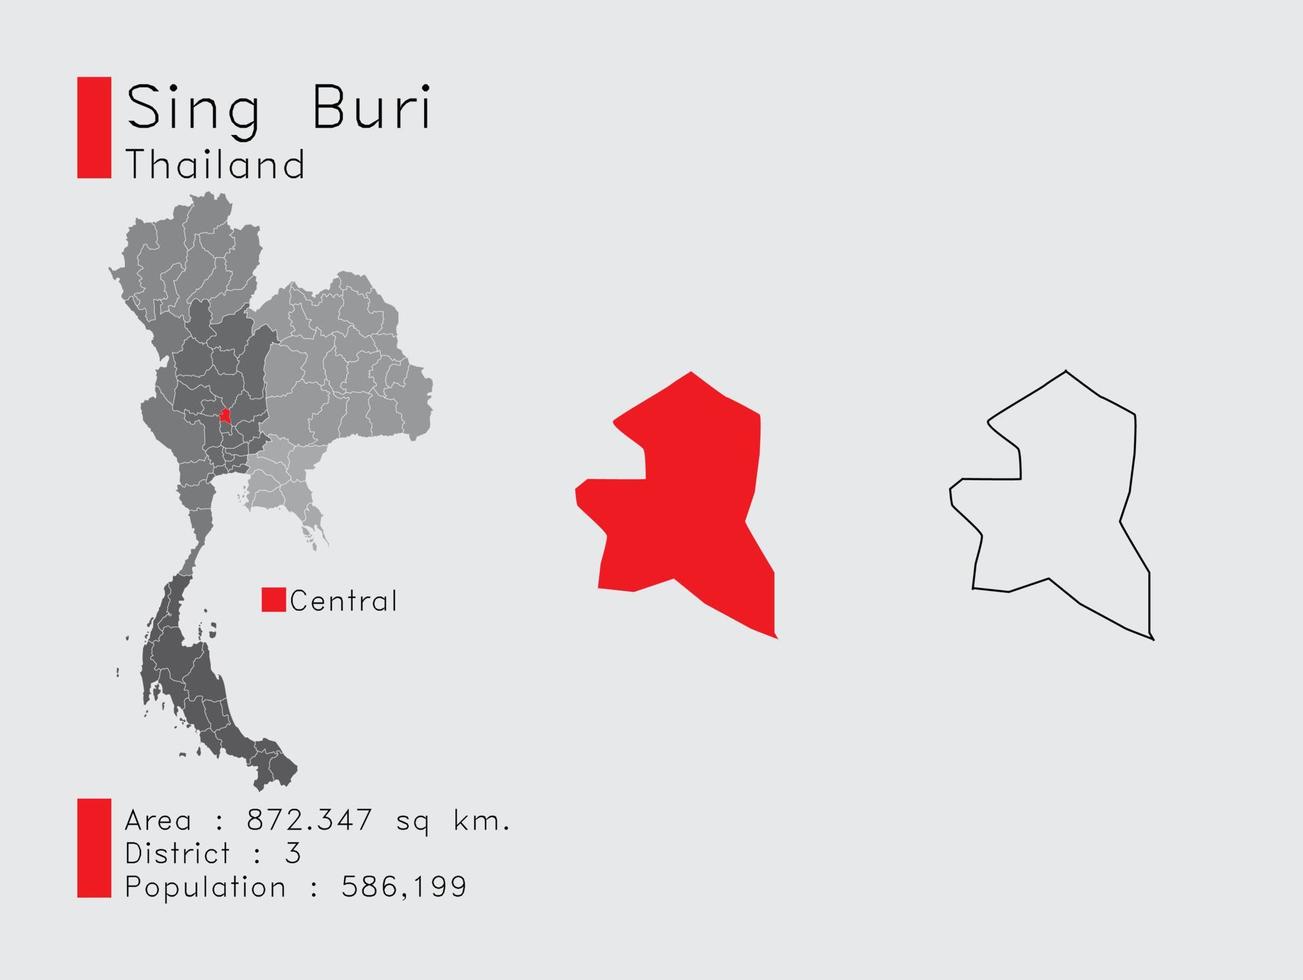 Sing Buri Position in Thailand eine Reihe von Infografik-Elementen für die Provinz. und Bereich Bezirk Bevölkerung und Gliederung. Vektor mit grauem Hintergrund.